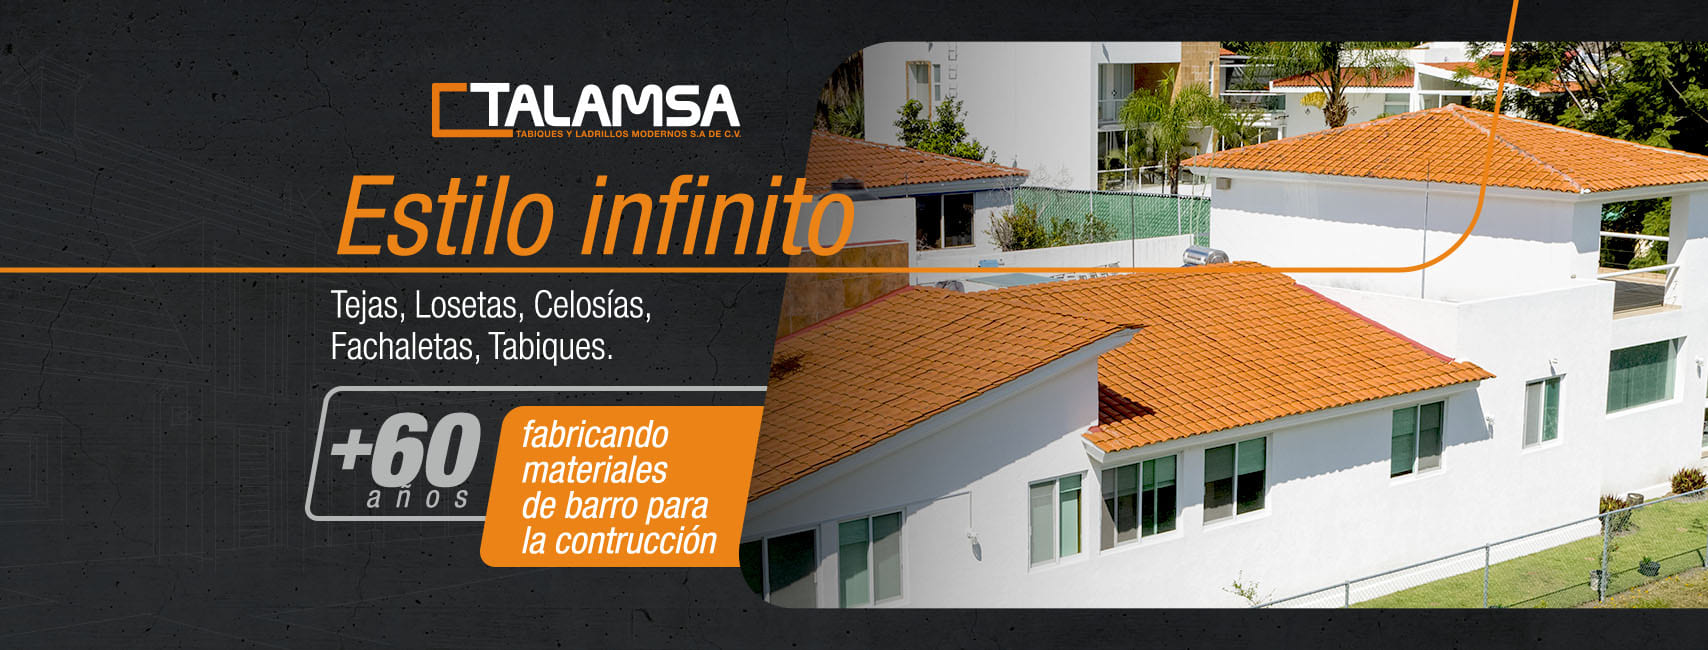 Talamsa - Fábrica de materiales de barro para la construcción